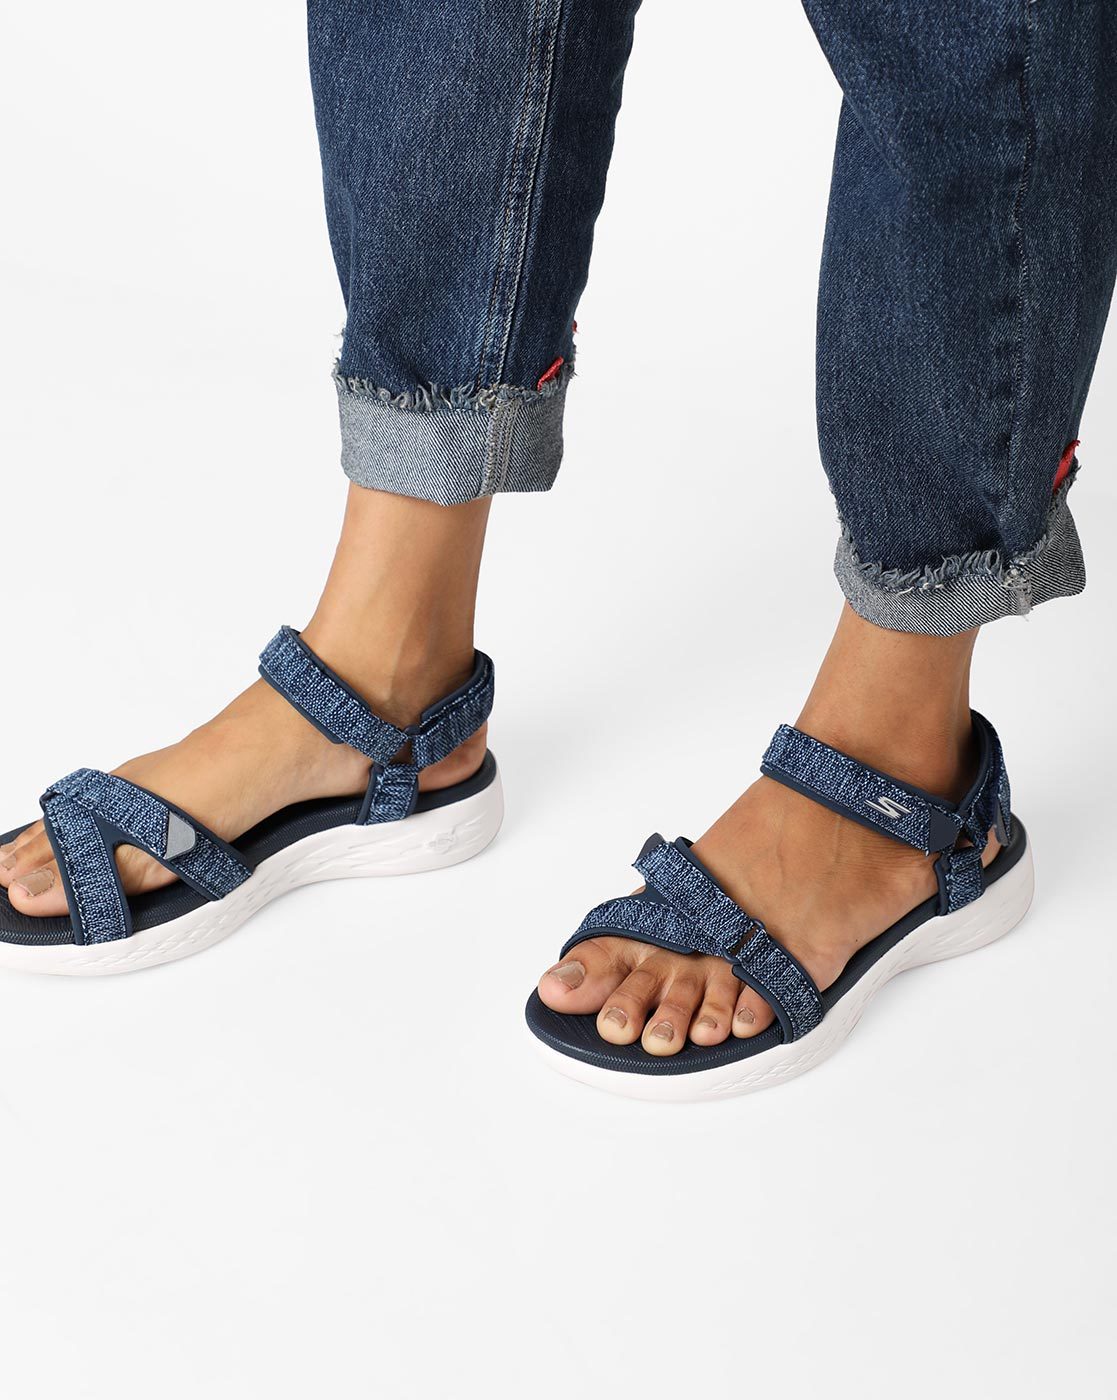 Flat Sandals for Women by Skechers 